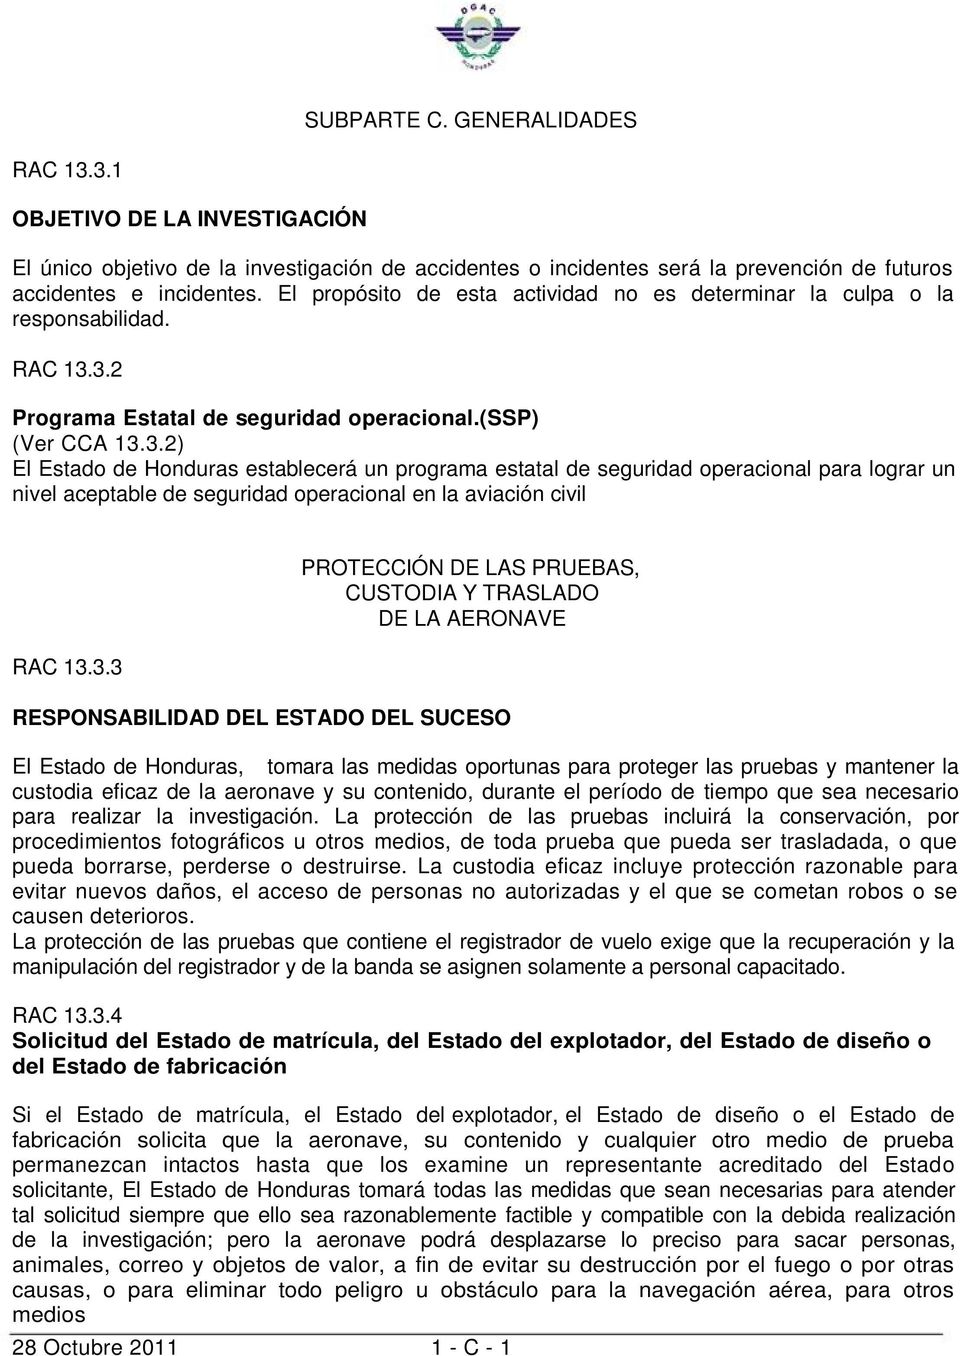 3.2 Programa Estatal de seguridad operacional.(ssp) (Ver CCA 13.3.2) El Estado de Honduras establecerá un programa estatal de seguridad operacional para lograr un nivel aceptable de seguridad operacional en la aviación civil RAC 13.